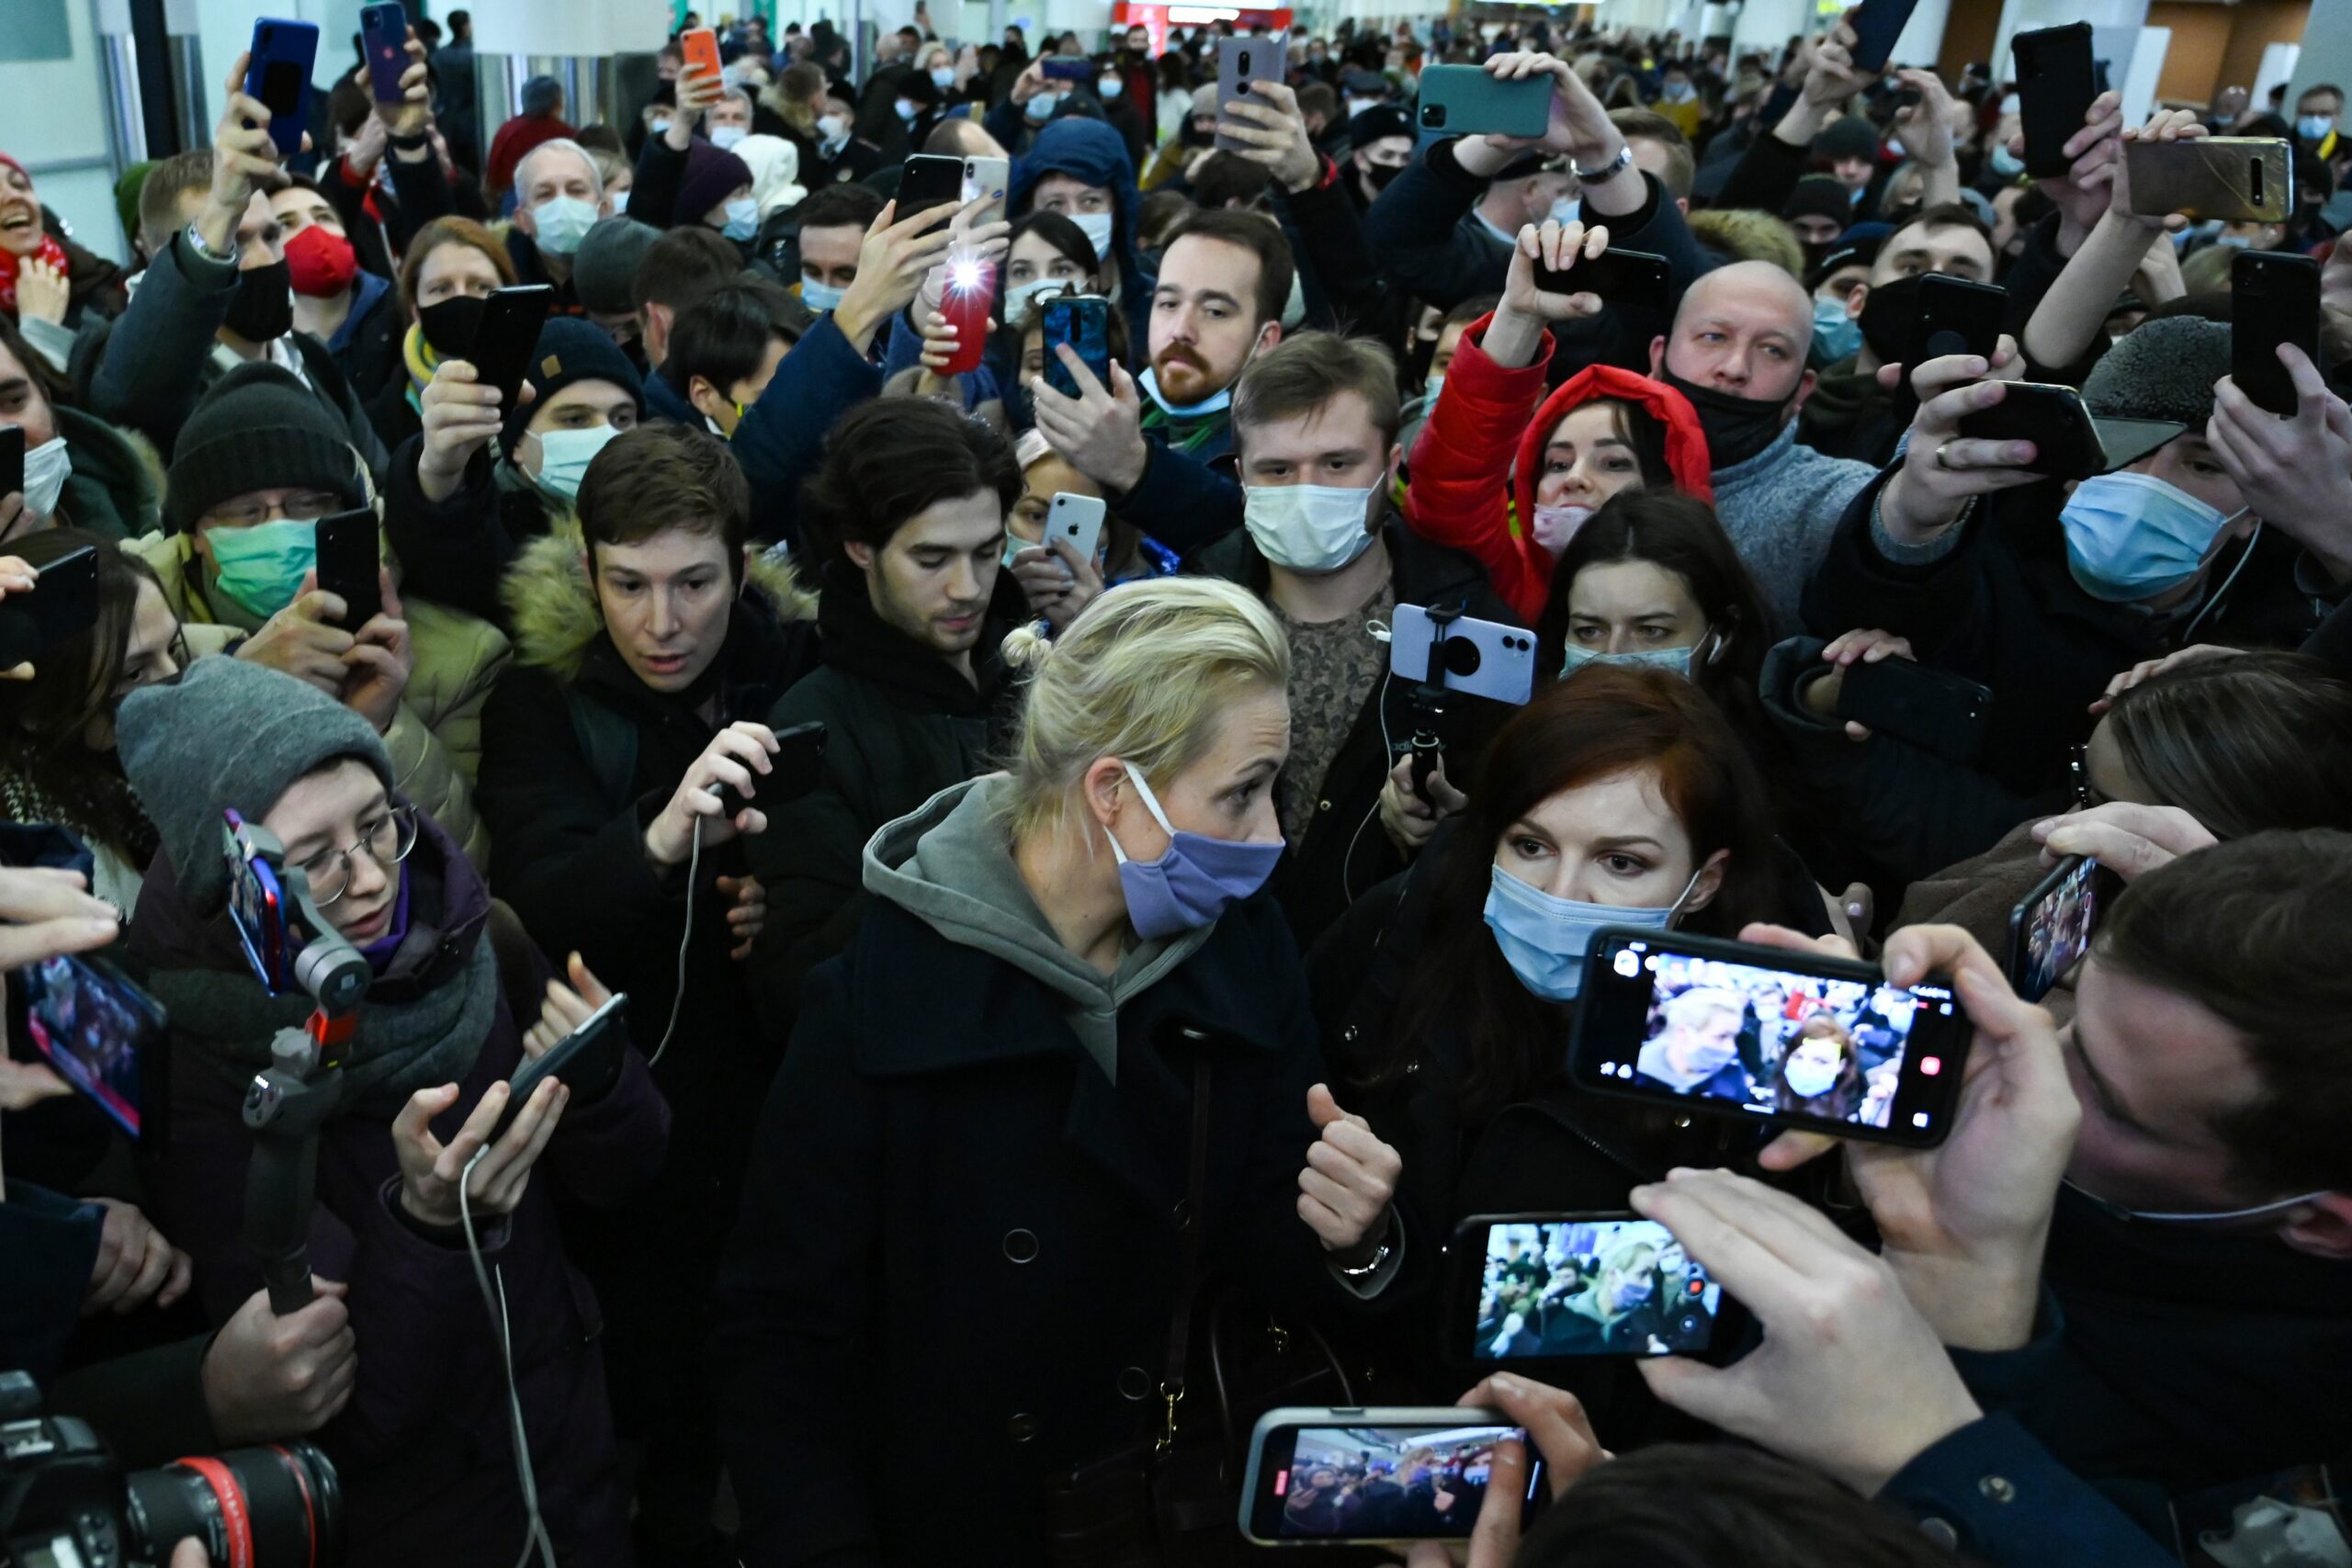 Юлия Навальная в аэропорту. Фото KIRILL KUDRYAVTSEV / TASS / Scanpix / Leta